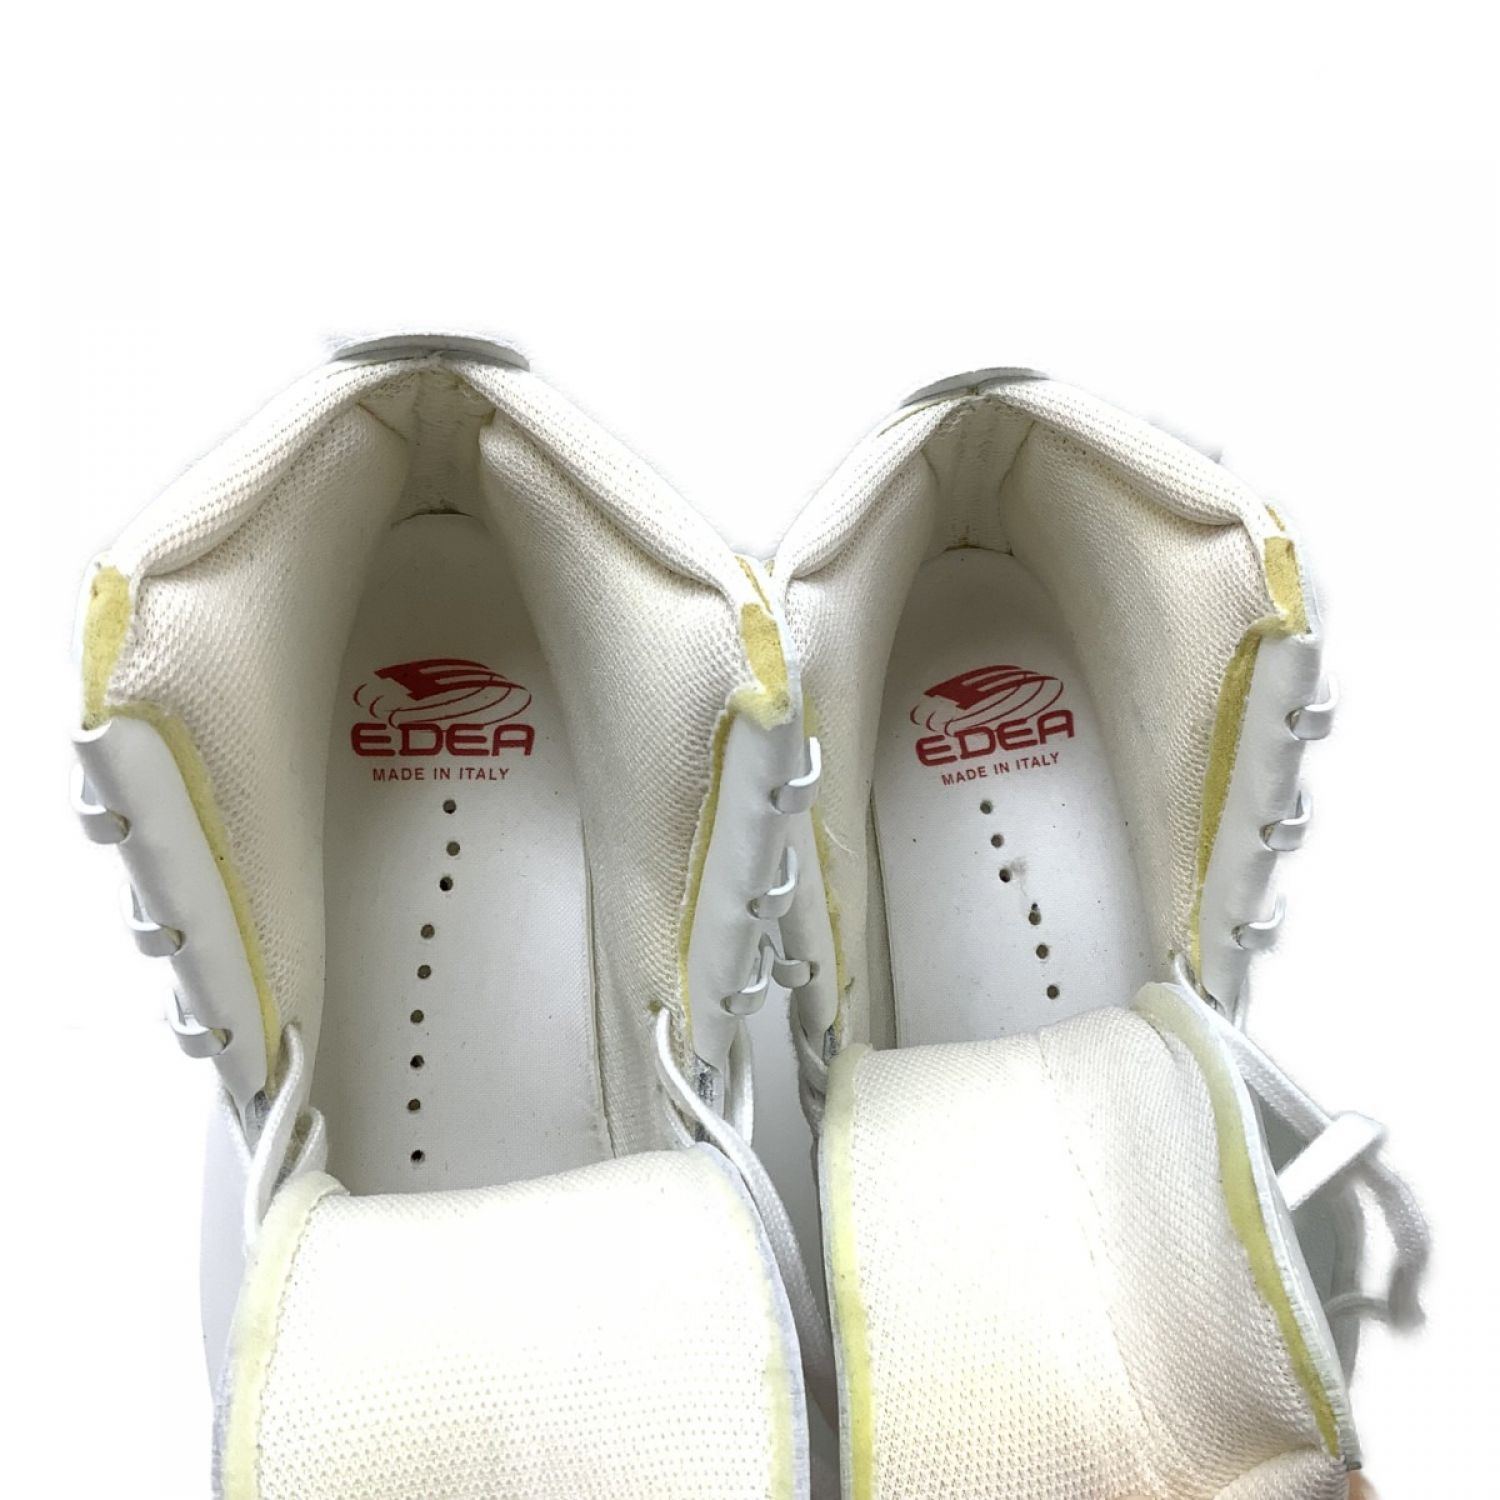 店内全品ﾎﾟｲﾝﾄ2倍!! EDEA made in italy 210 フィギュアスケート 靴